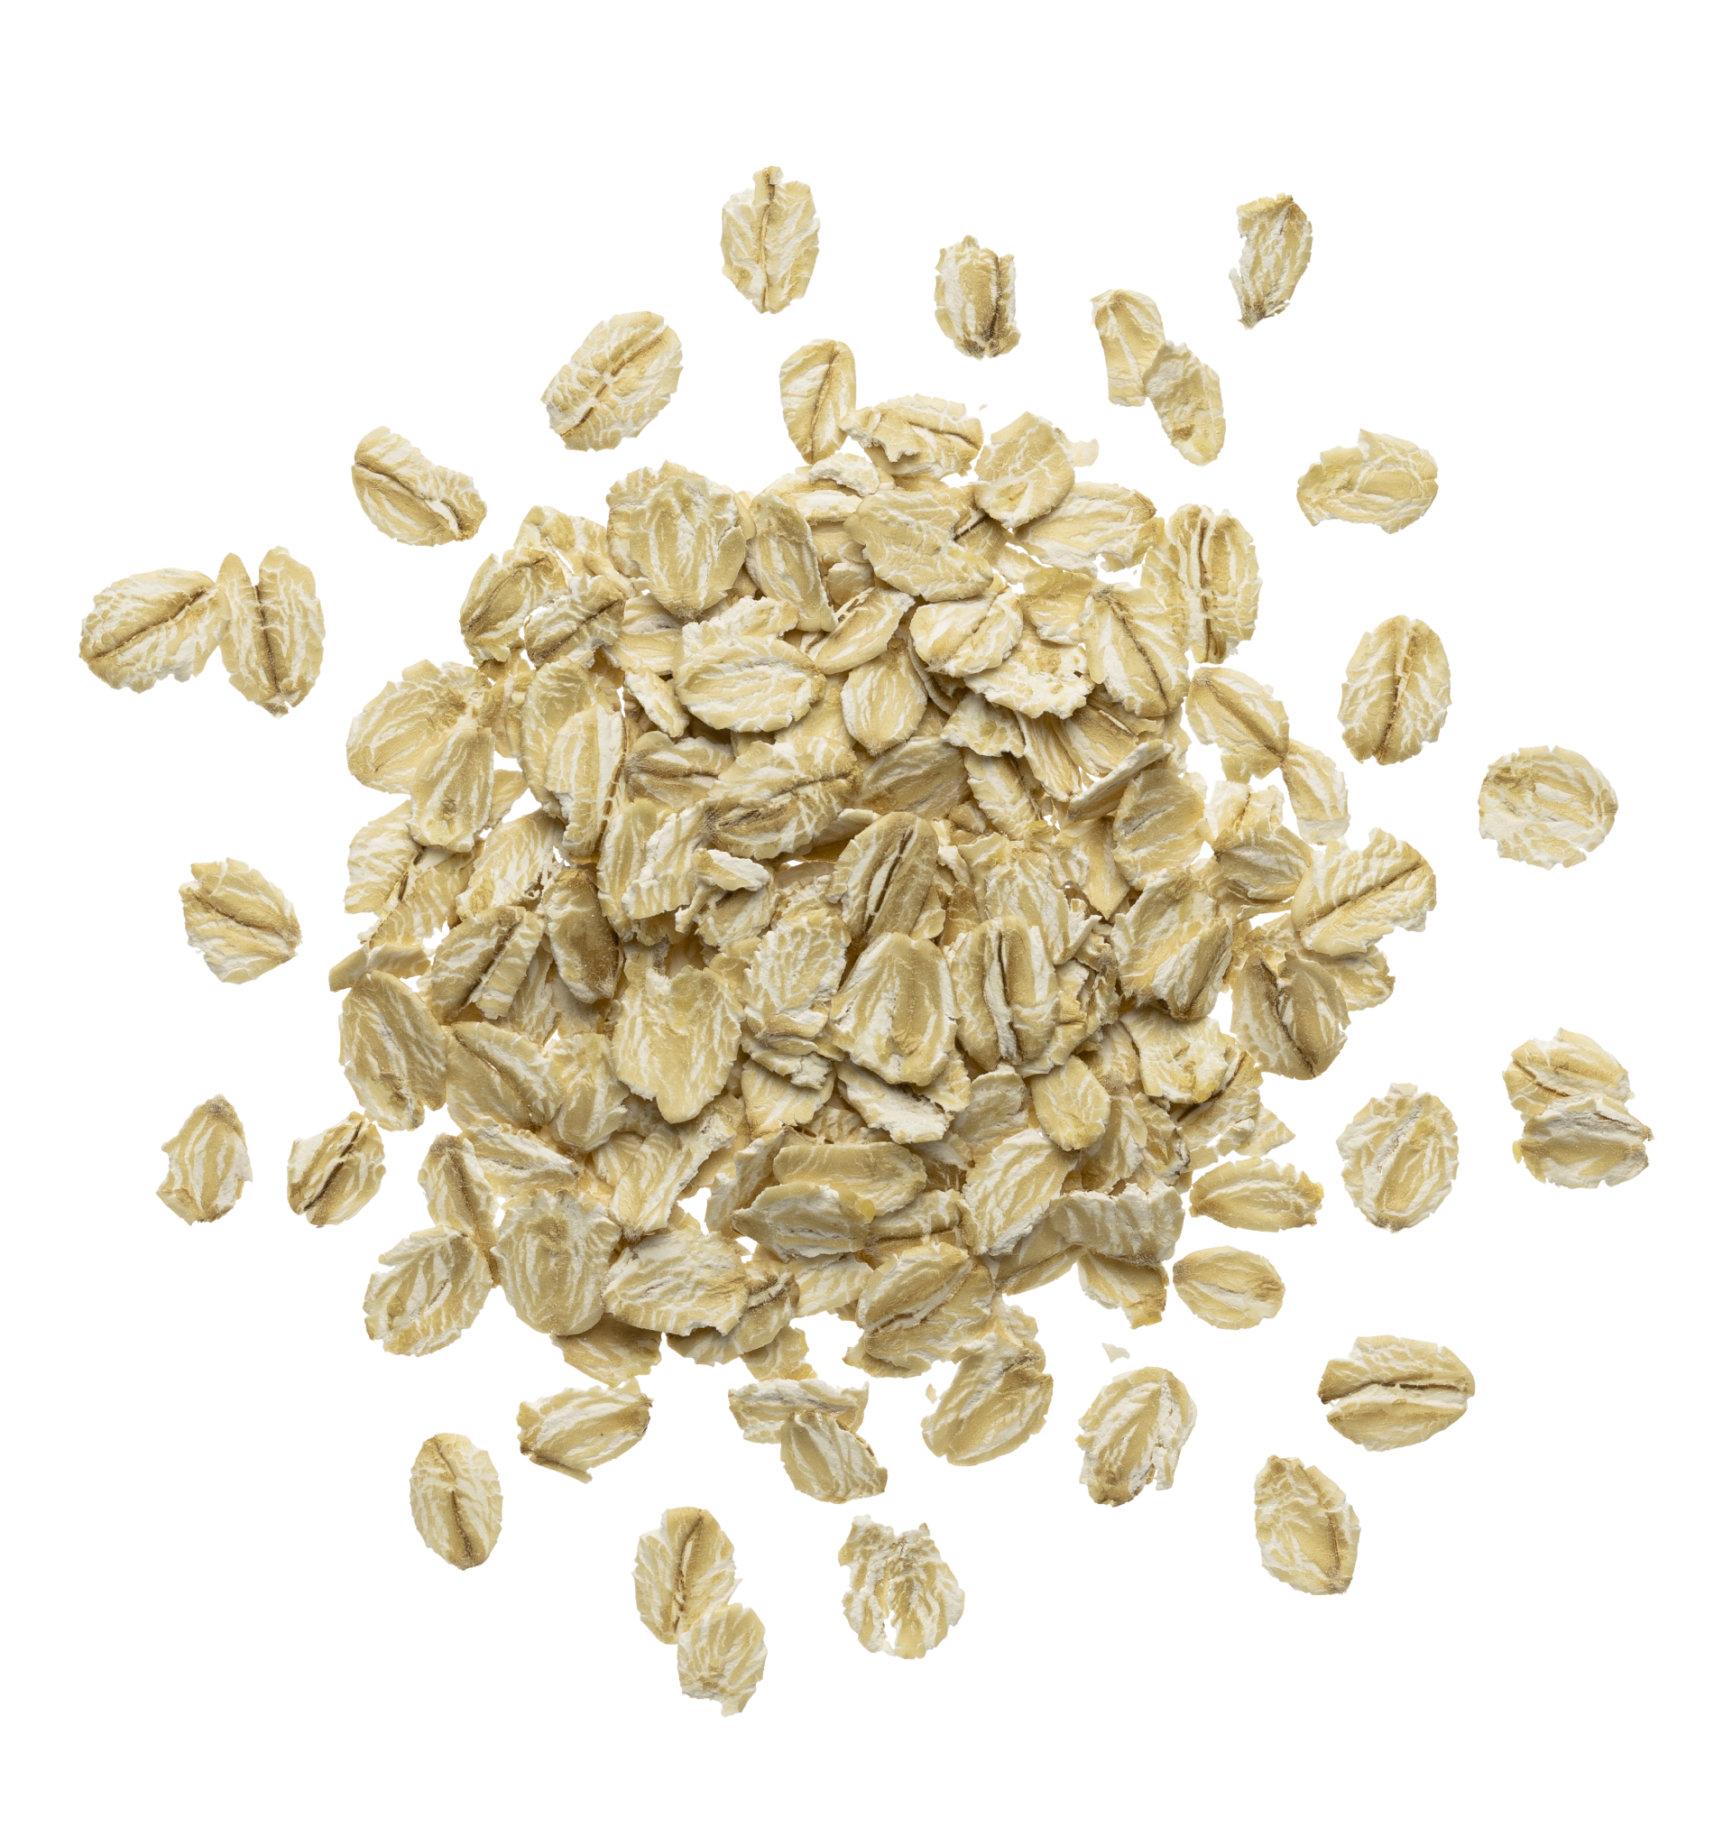 Products - 65 Oats - Dedicated gluten-free oat mill : 65 Oats ...